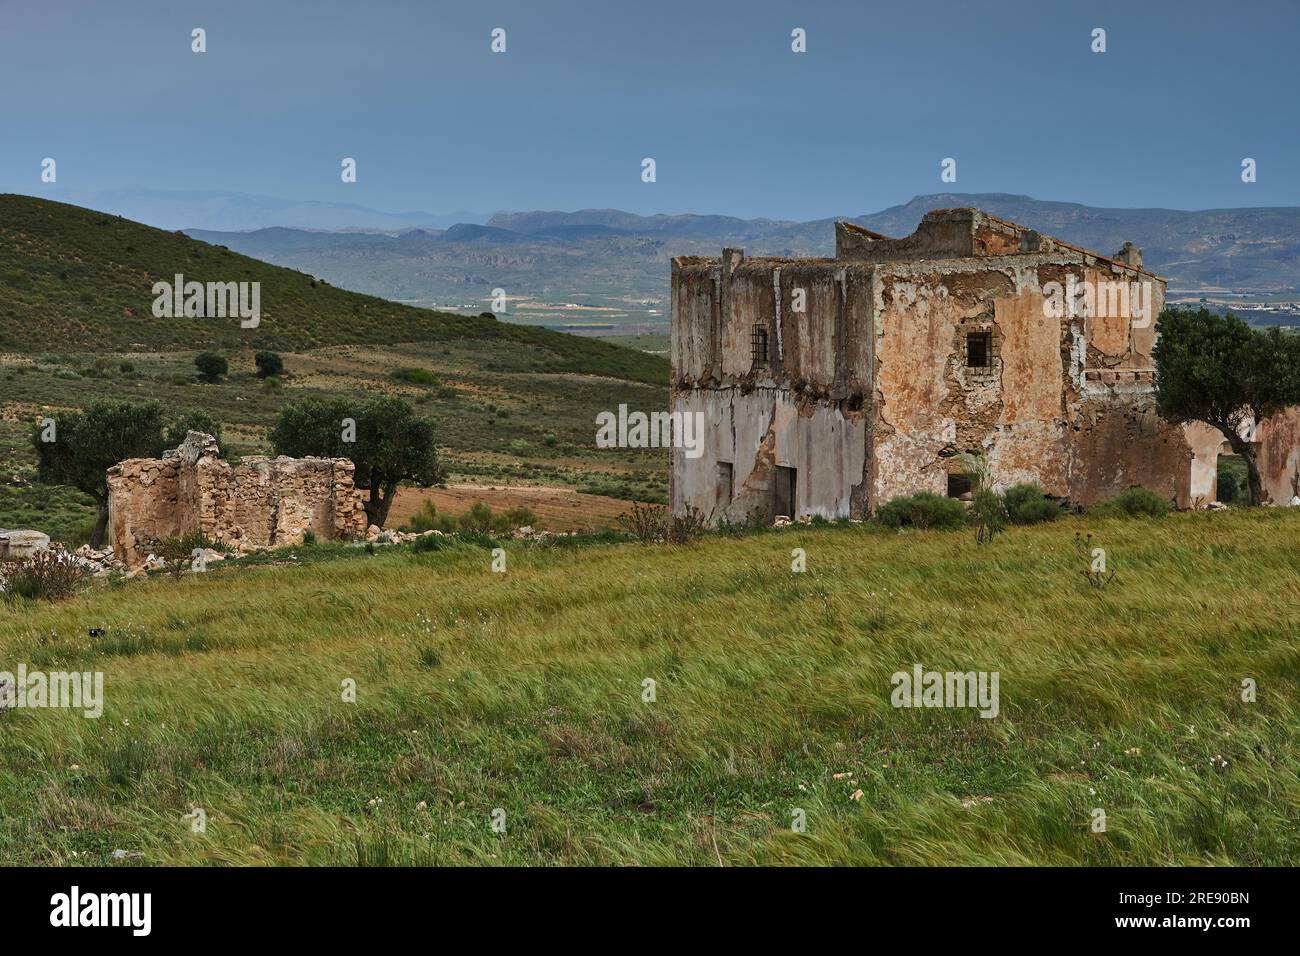 Verlassener Bauernhof.ruine,Andalousie,Espagne Banque D'Images